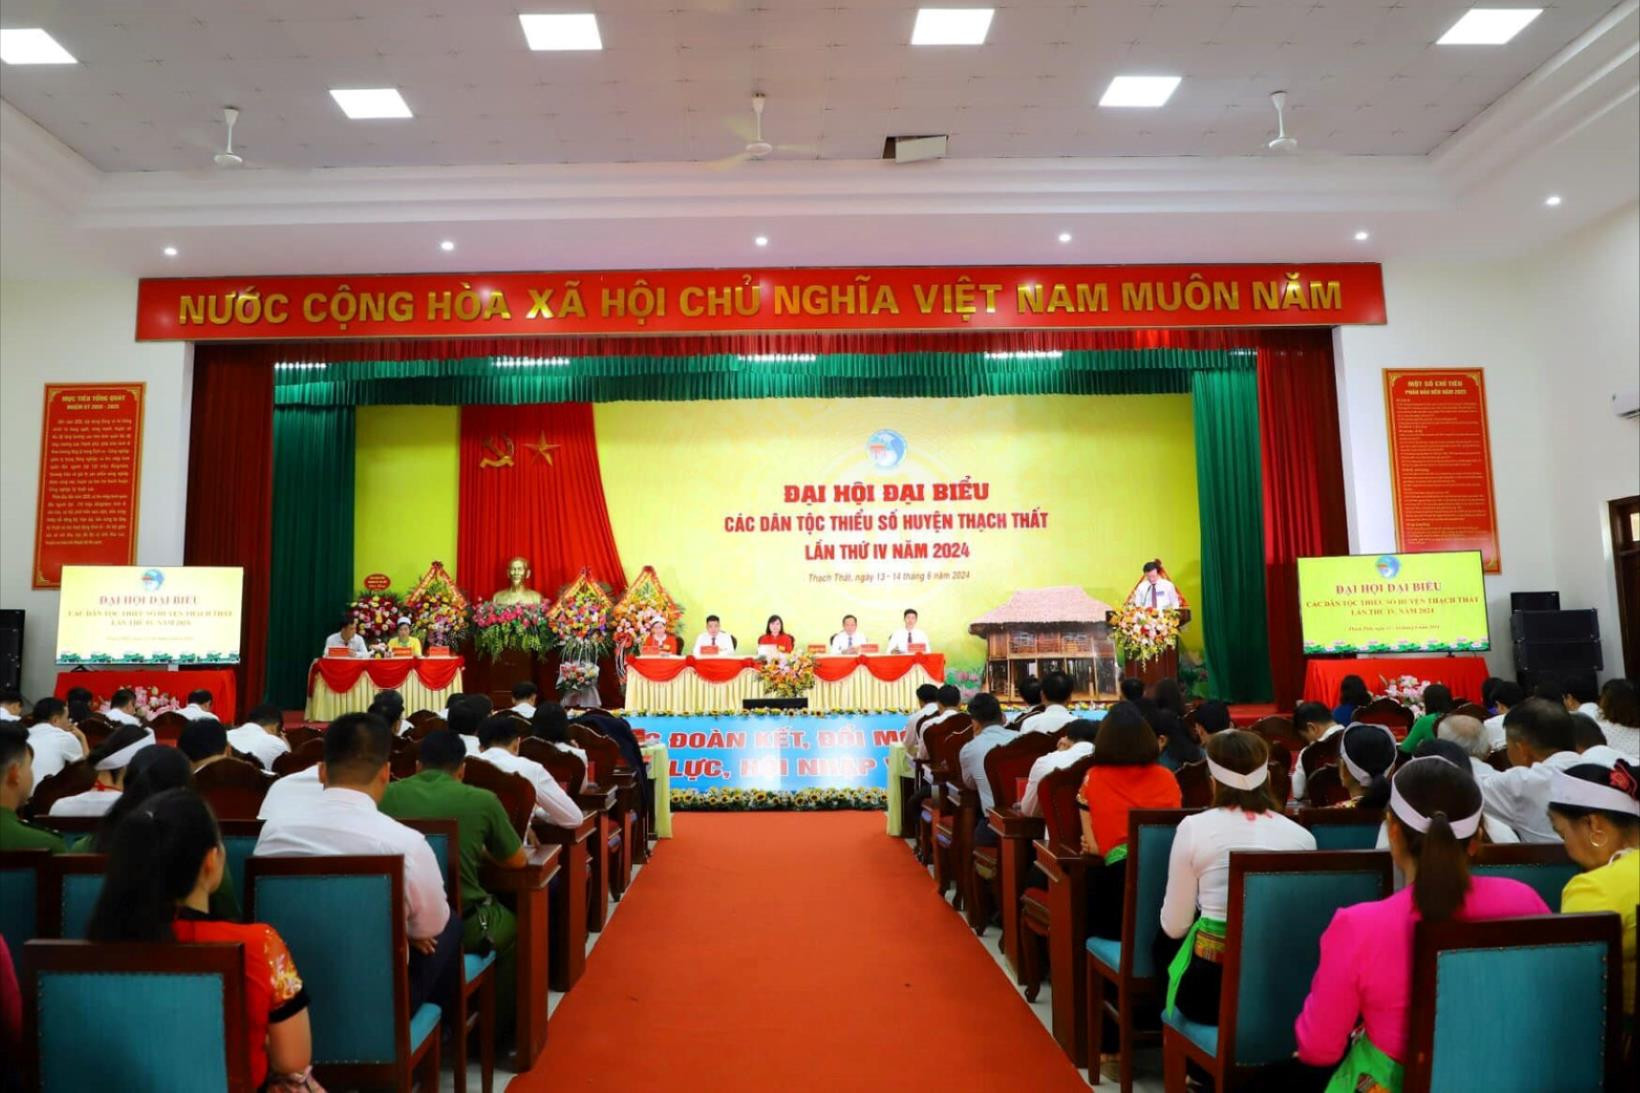 Quang cảnh Đại hội đại biểu các dân tộc thiểu số huyện Thạch Thất (TP Hà Nội) lần thứ IV năm 2024.